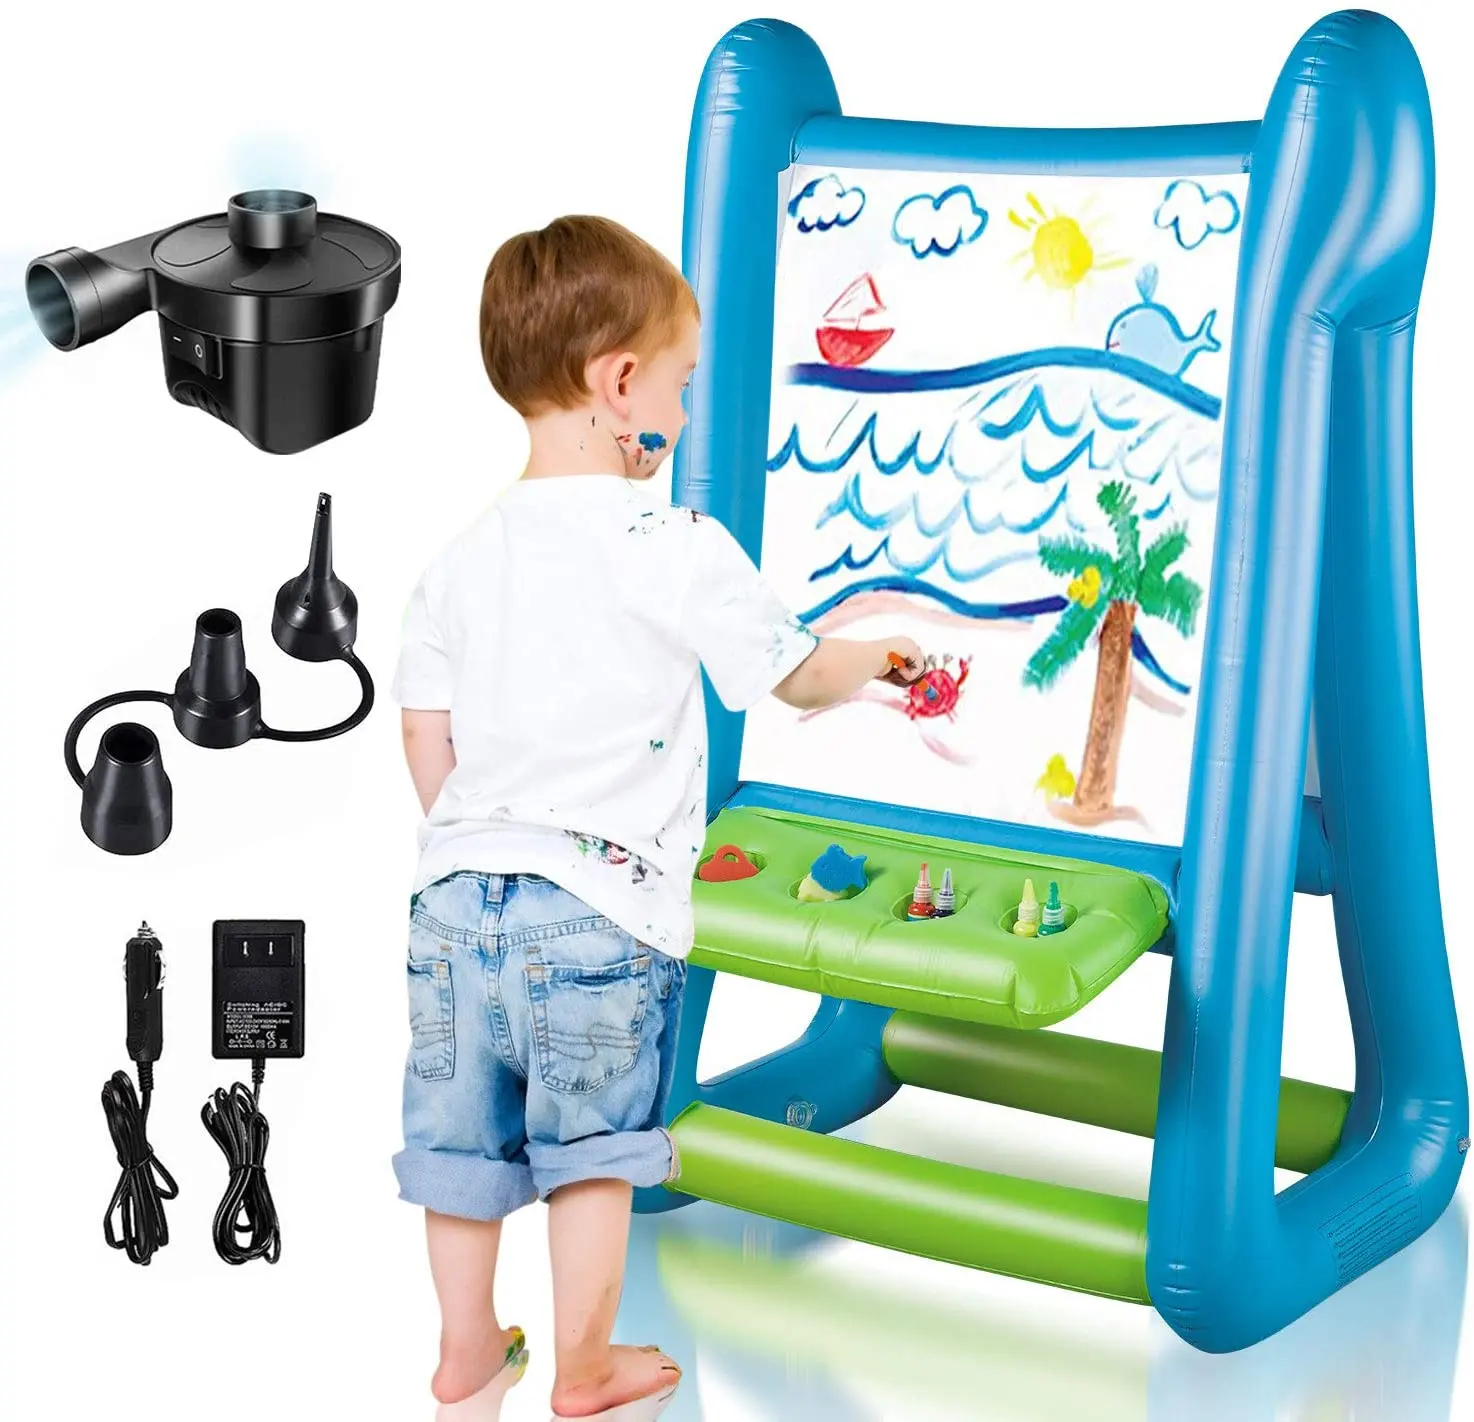 Sided Infla table Staffelei Outdoor/Indoor Spielzeug für Kinder im Alter von 4-8 Jahren mit Inflator und Farbe für junge Künstler Geschenke für Jungen Mädchen